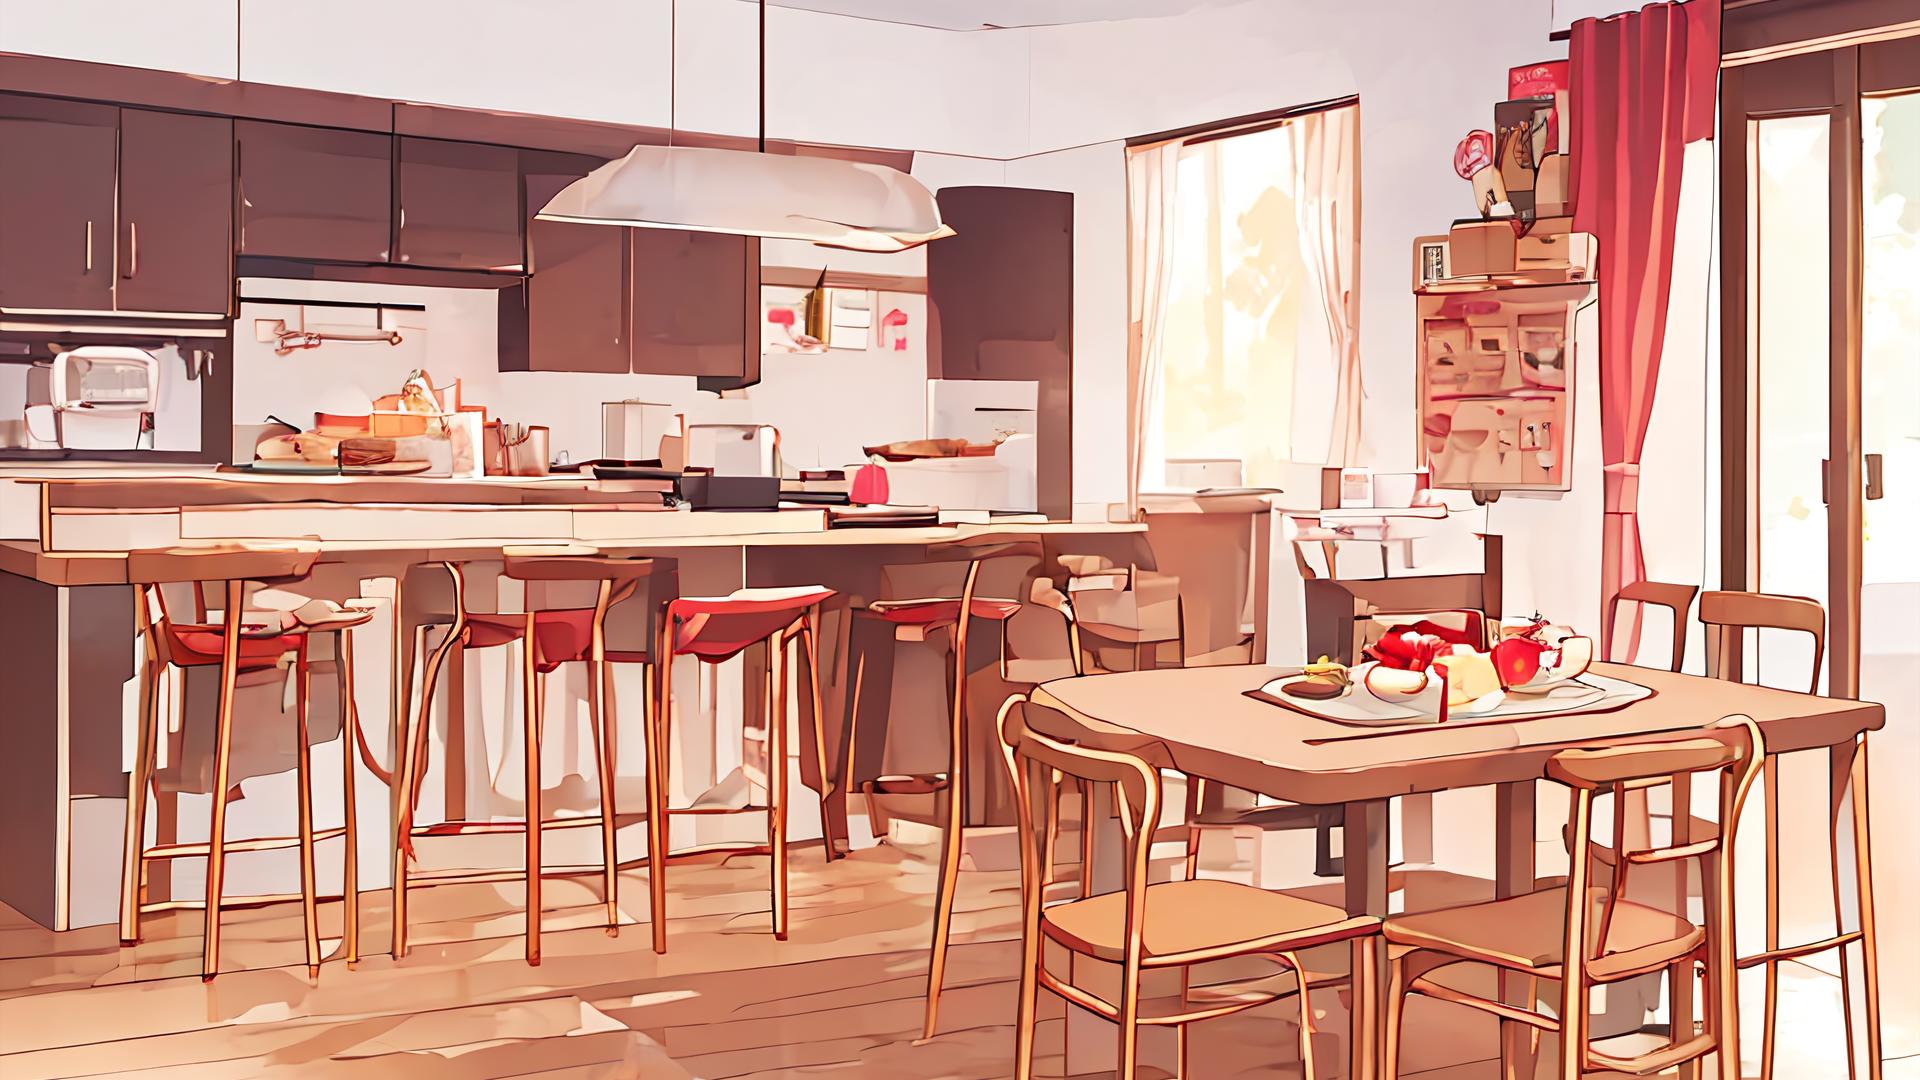 Share 154+ anime backgrounds kitchen best - 3tdesign.edu.vn